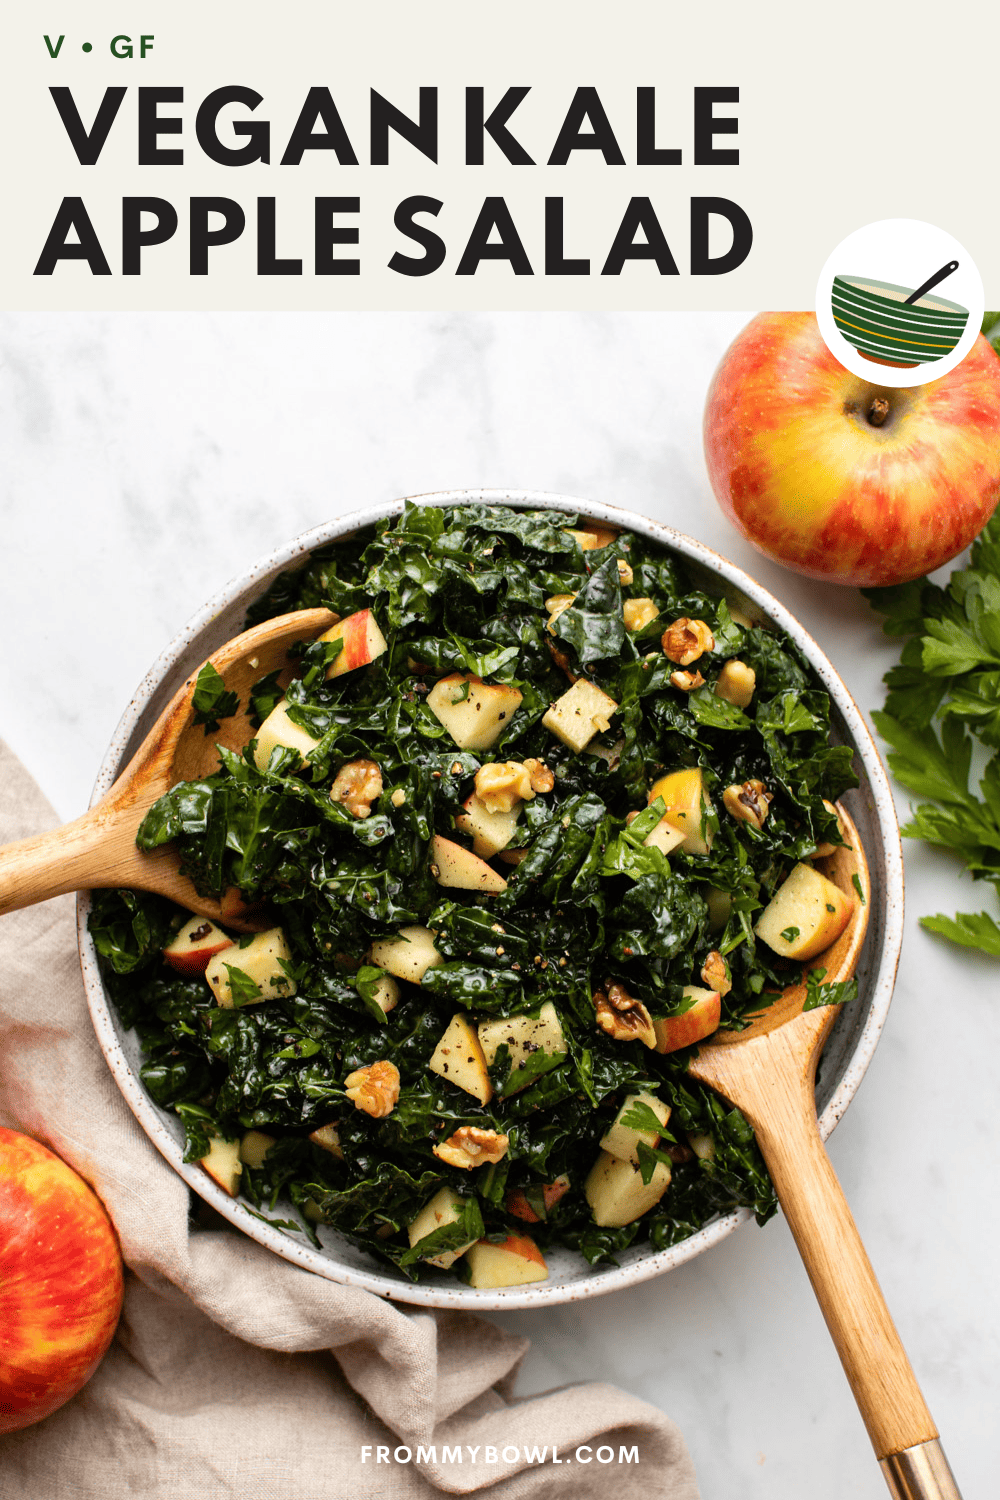 Kale Beet Juice - The All Natural Vegan